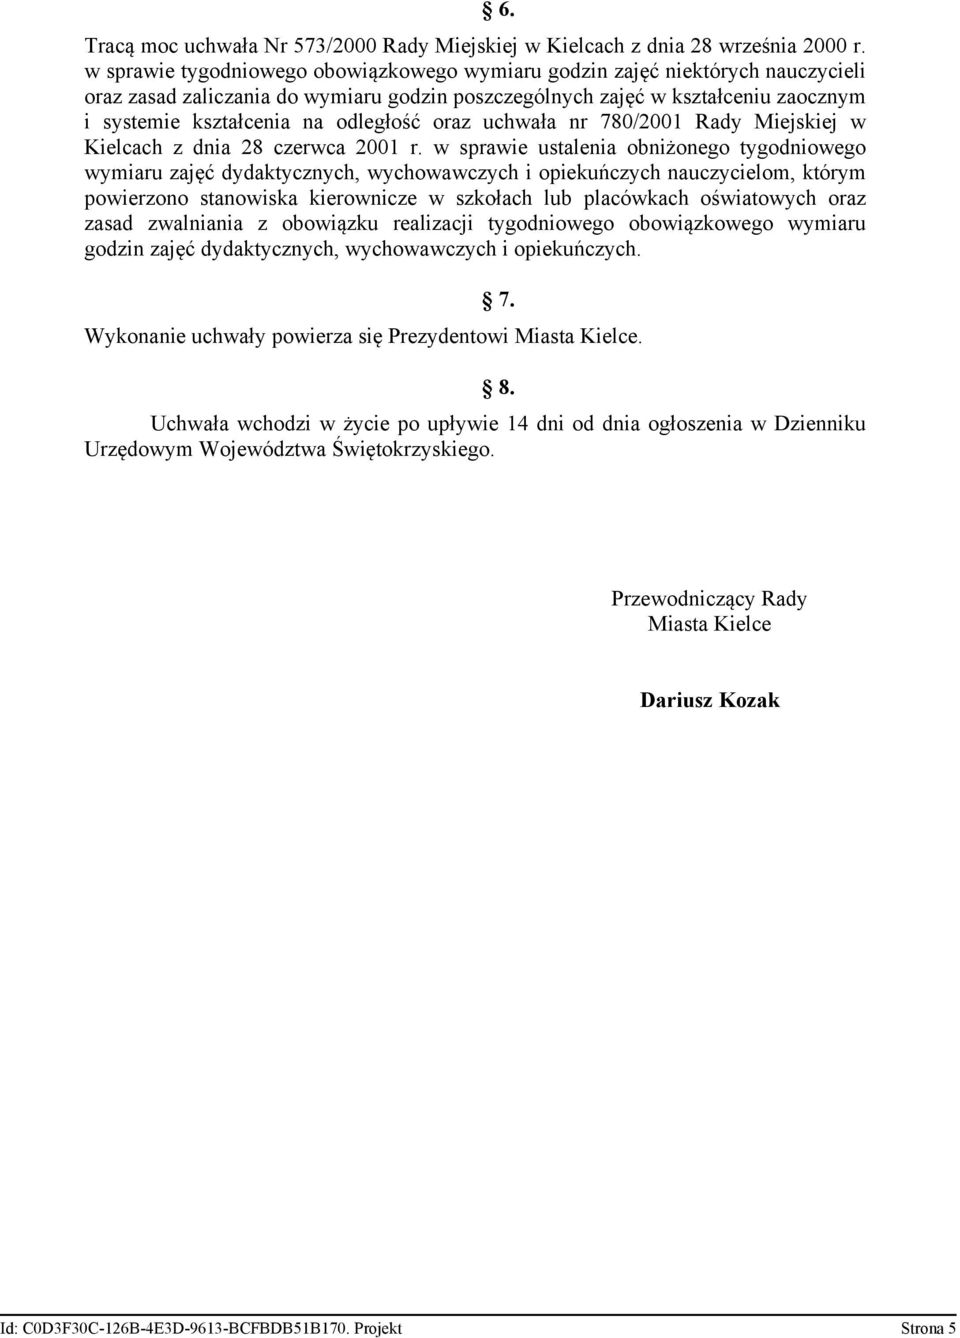 odległość oraz uchwała nr 780/2001 Rady Miejskiej w Kielcach z dnia 28 czerwca 2001 r.